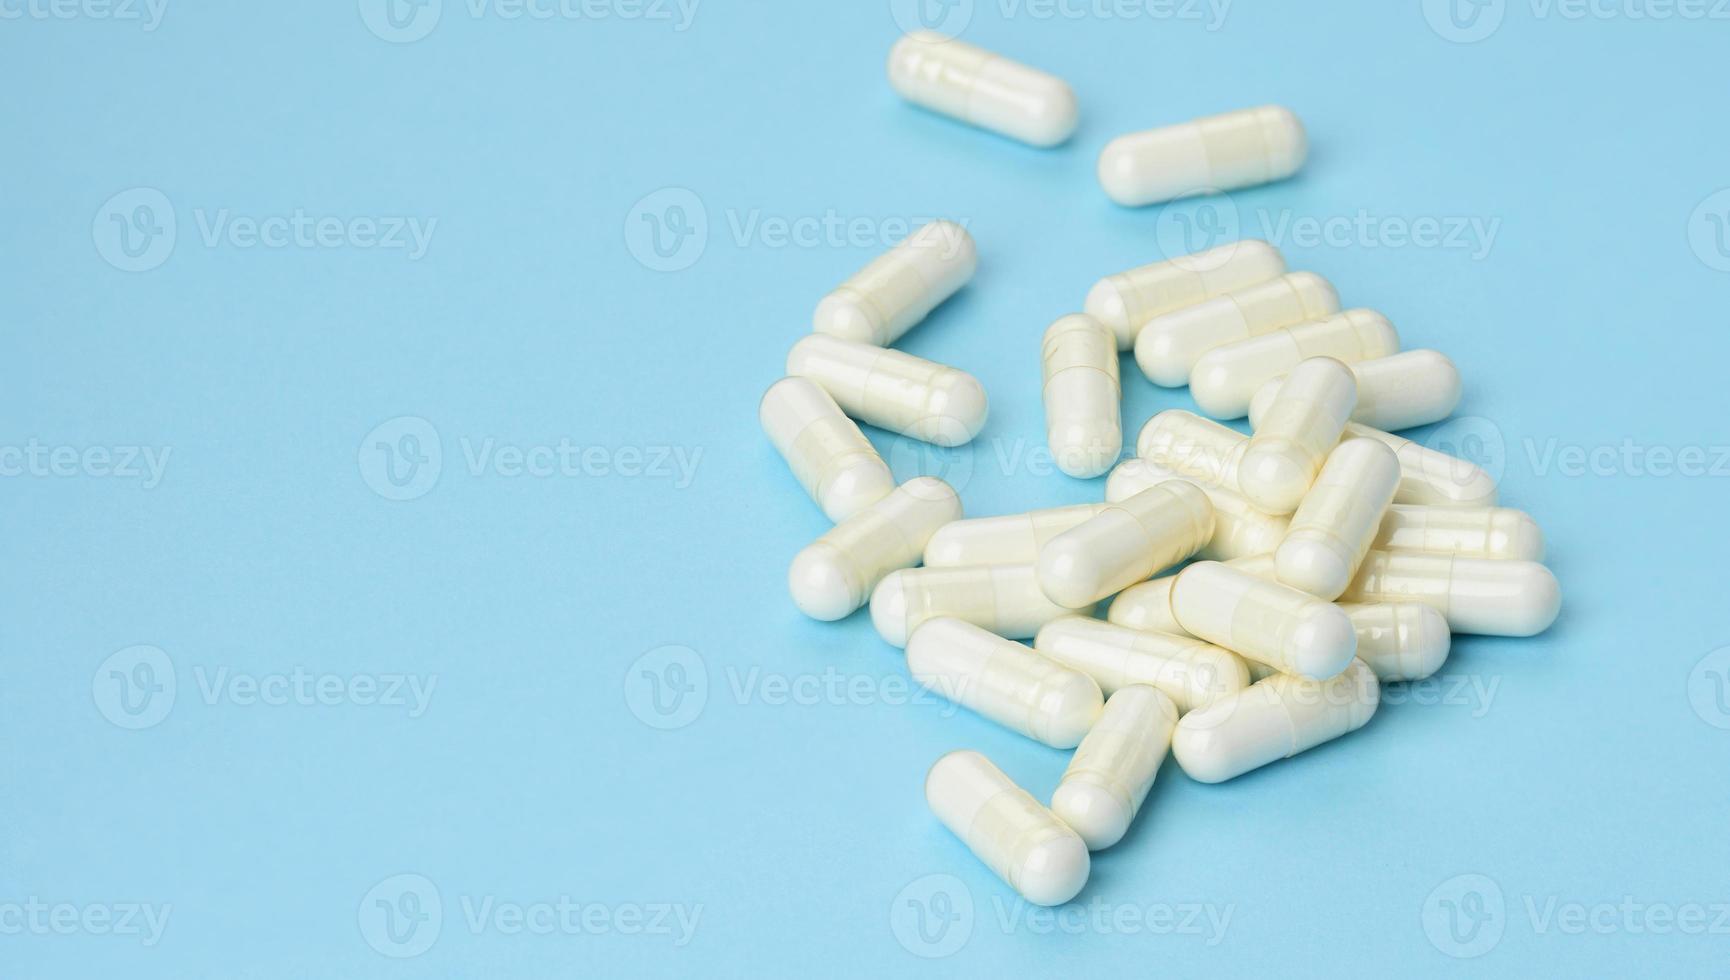 medizinisches pulver in weißen kapseln auf blauem hintergrund. Behandlungspillen, Nahrungsergänzungsmittel foto